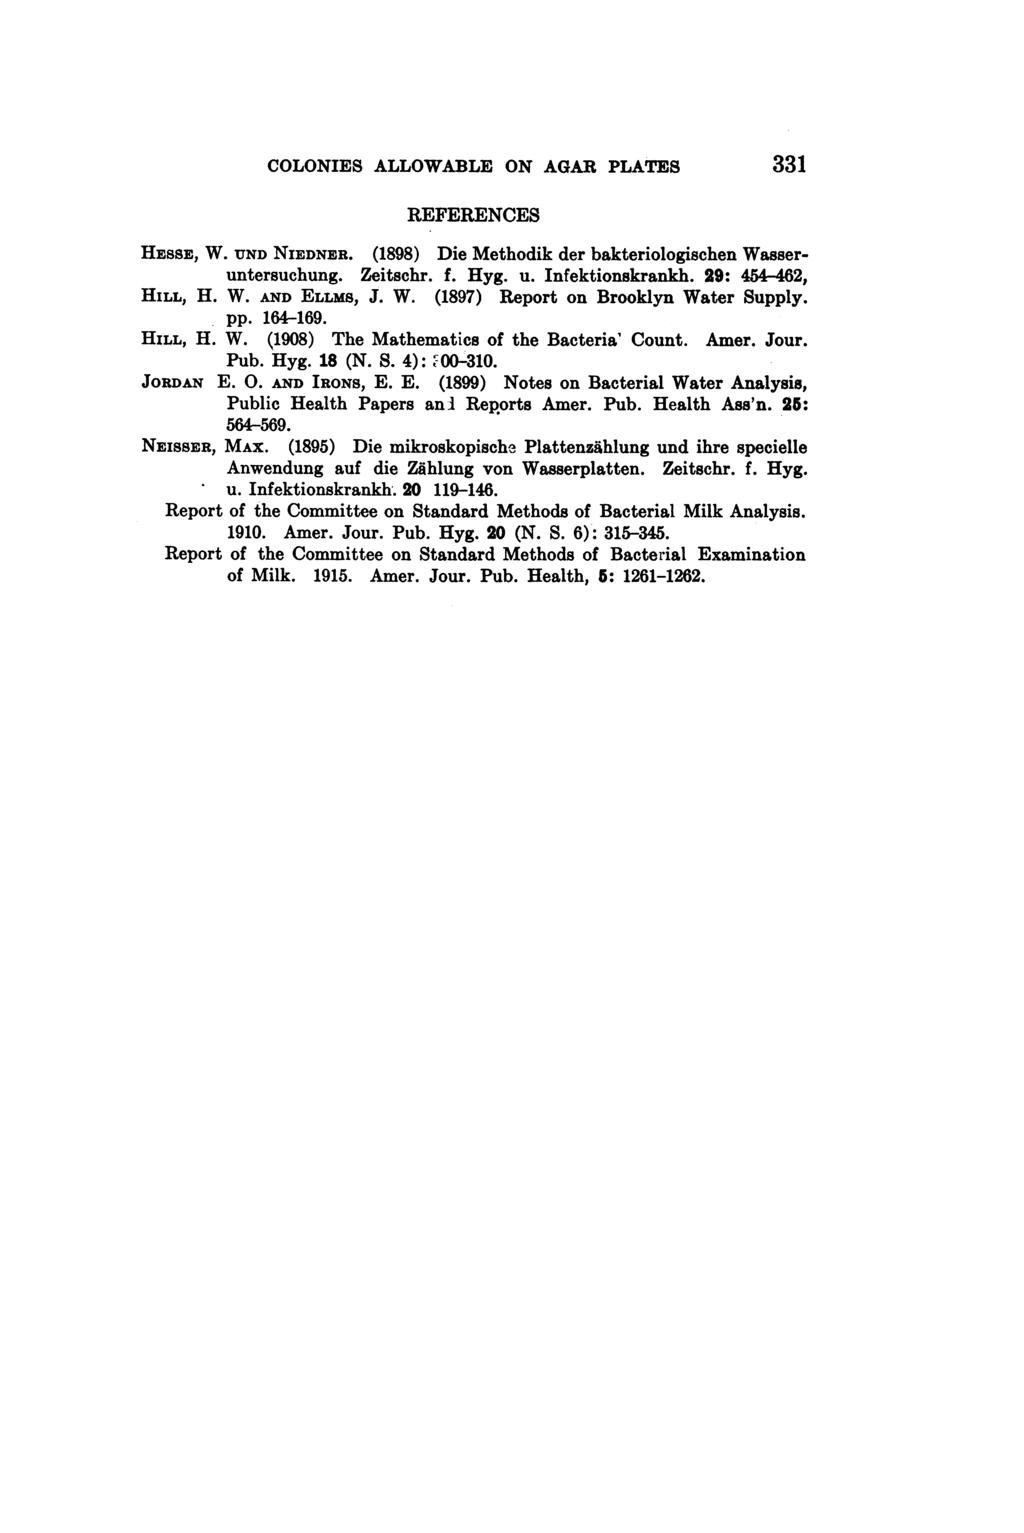 COLONIES ALLOWABLE ON AGAR PLATES 331 REFERENCES HESSE, W. UND NIEDNER. (1898) Die Methodik der bakteriologischen Wasseruntersuchung. Zeitschr. f. Hyg. u. Infektionskrankh. 29: 454-462, HILL, H. W. AND ELLMs, J.